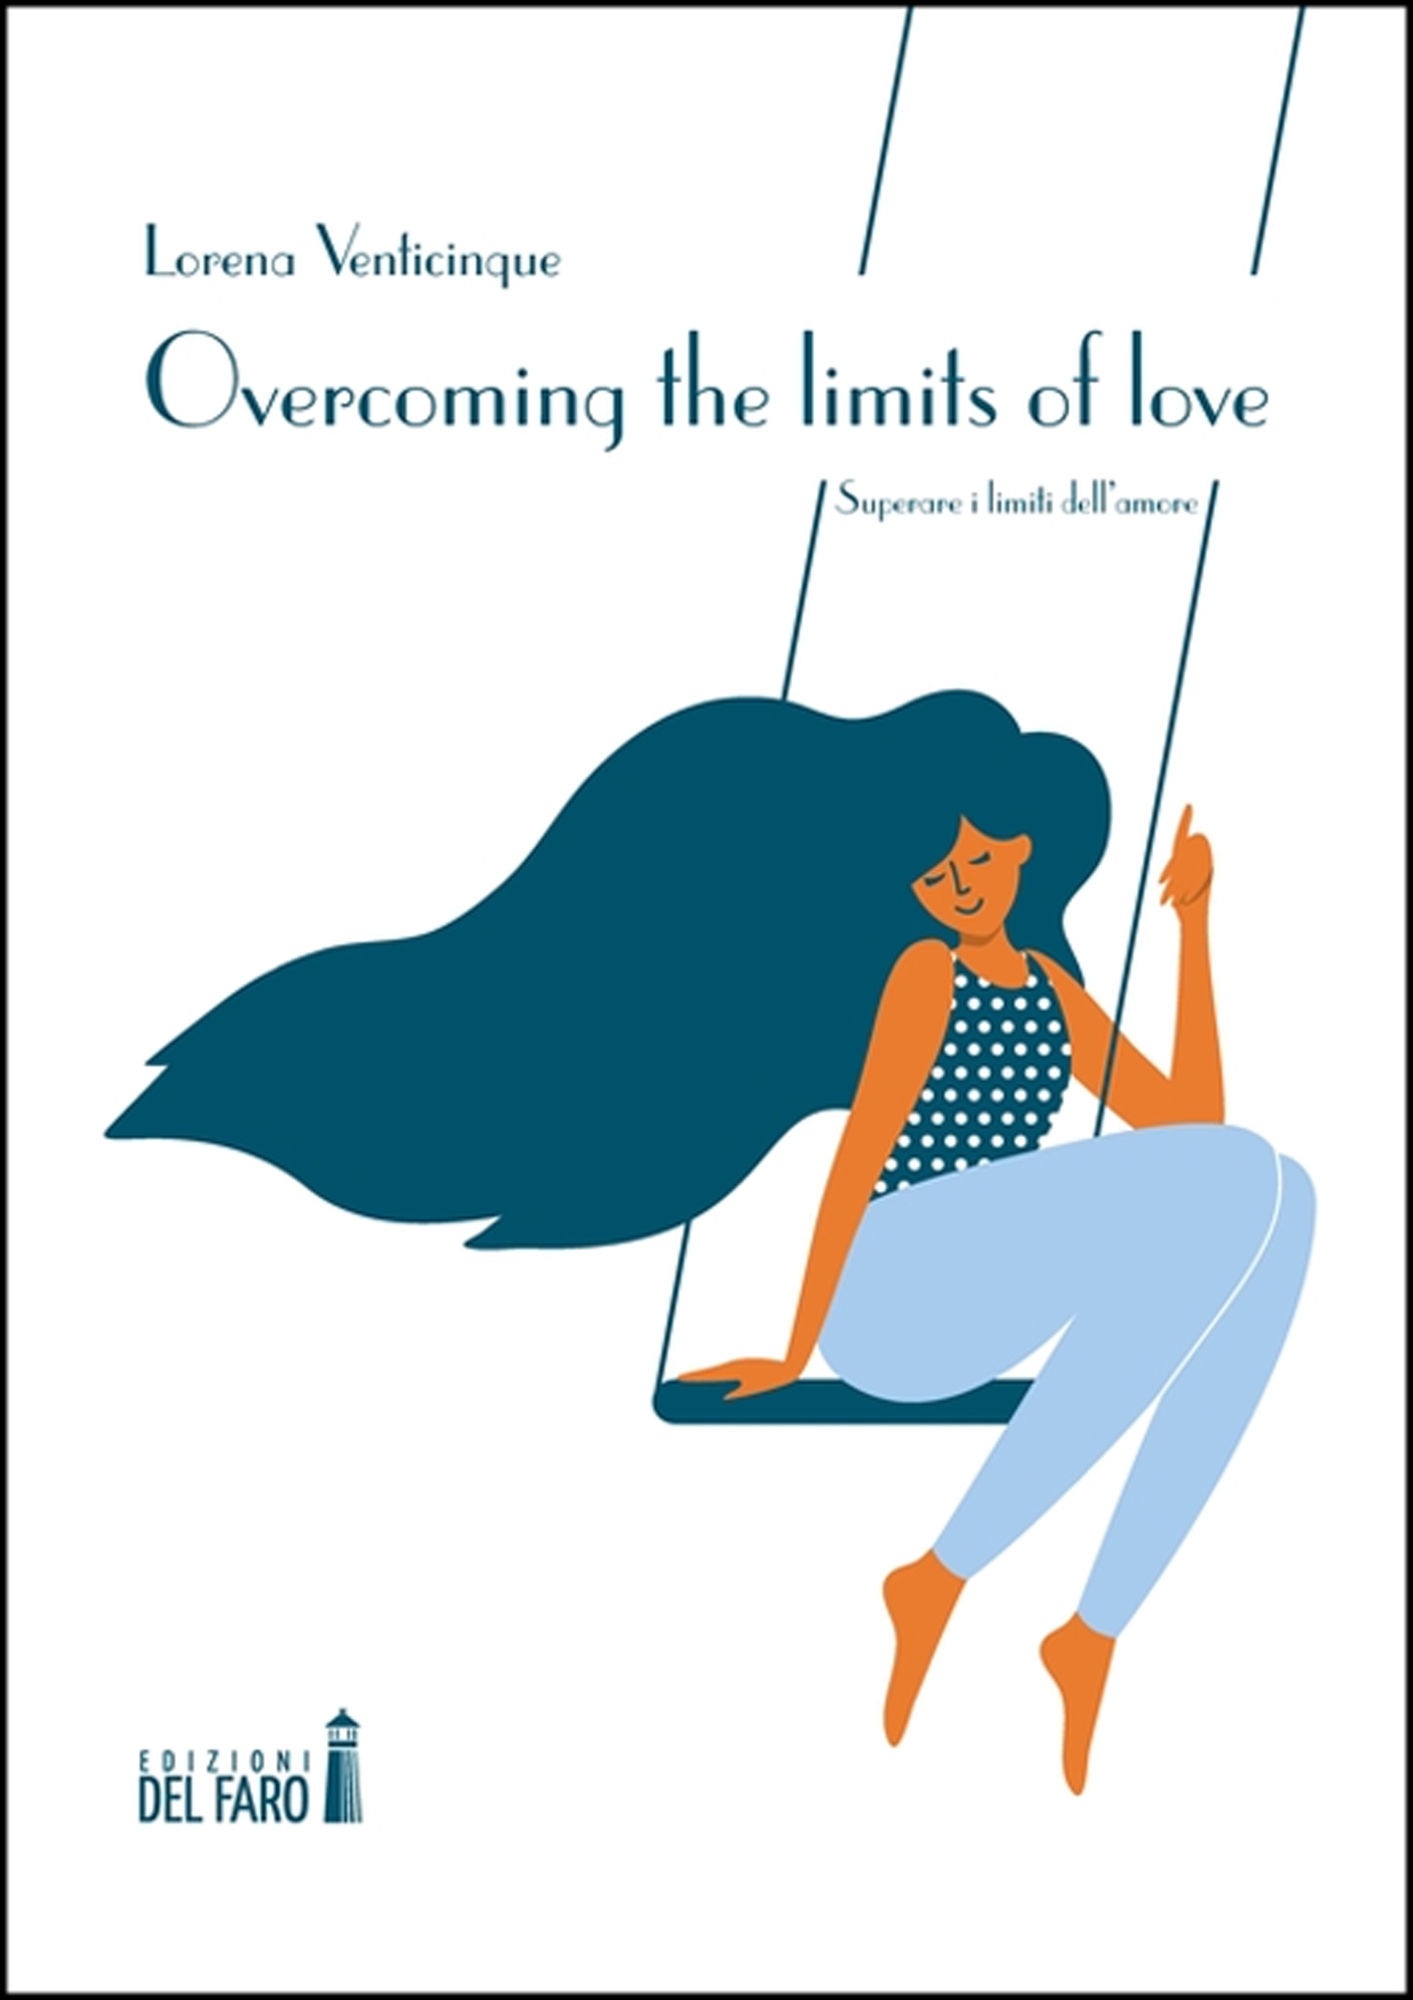 Libri Venticinque Lorena - Overcoming The Limits Of Love. Ediz. Italiana NUOVO SIGILLATO, EDIZIONE DEL 07/02/2023 SUBITO DISPONIBILE